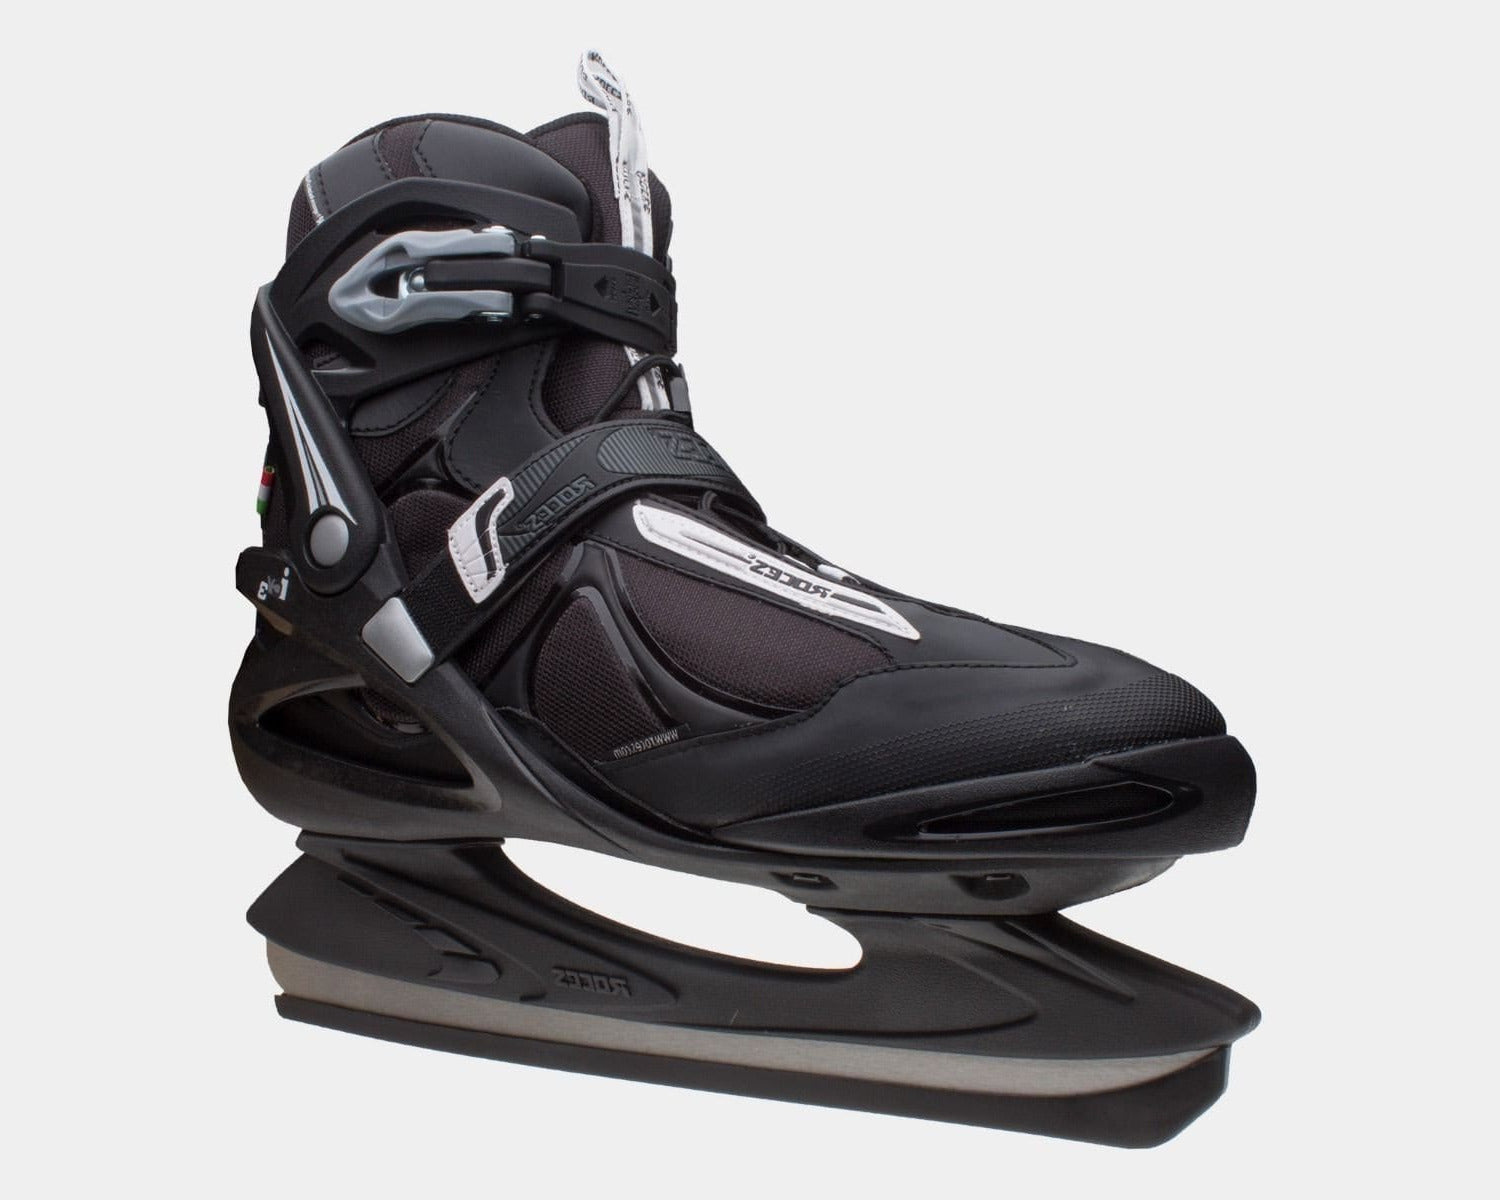 ICY 3 Ice Skates product image